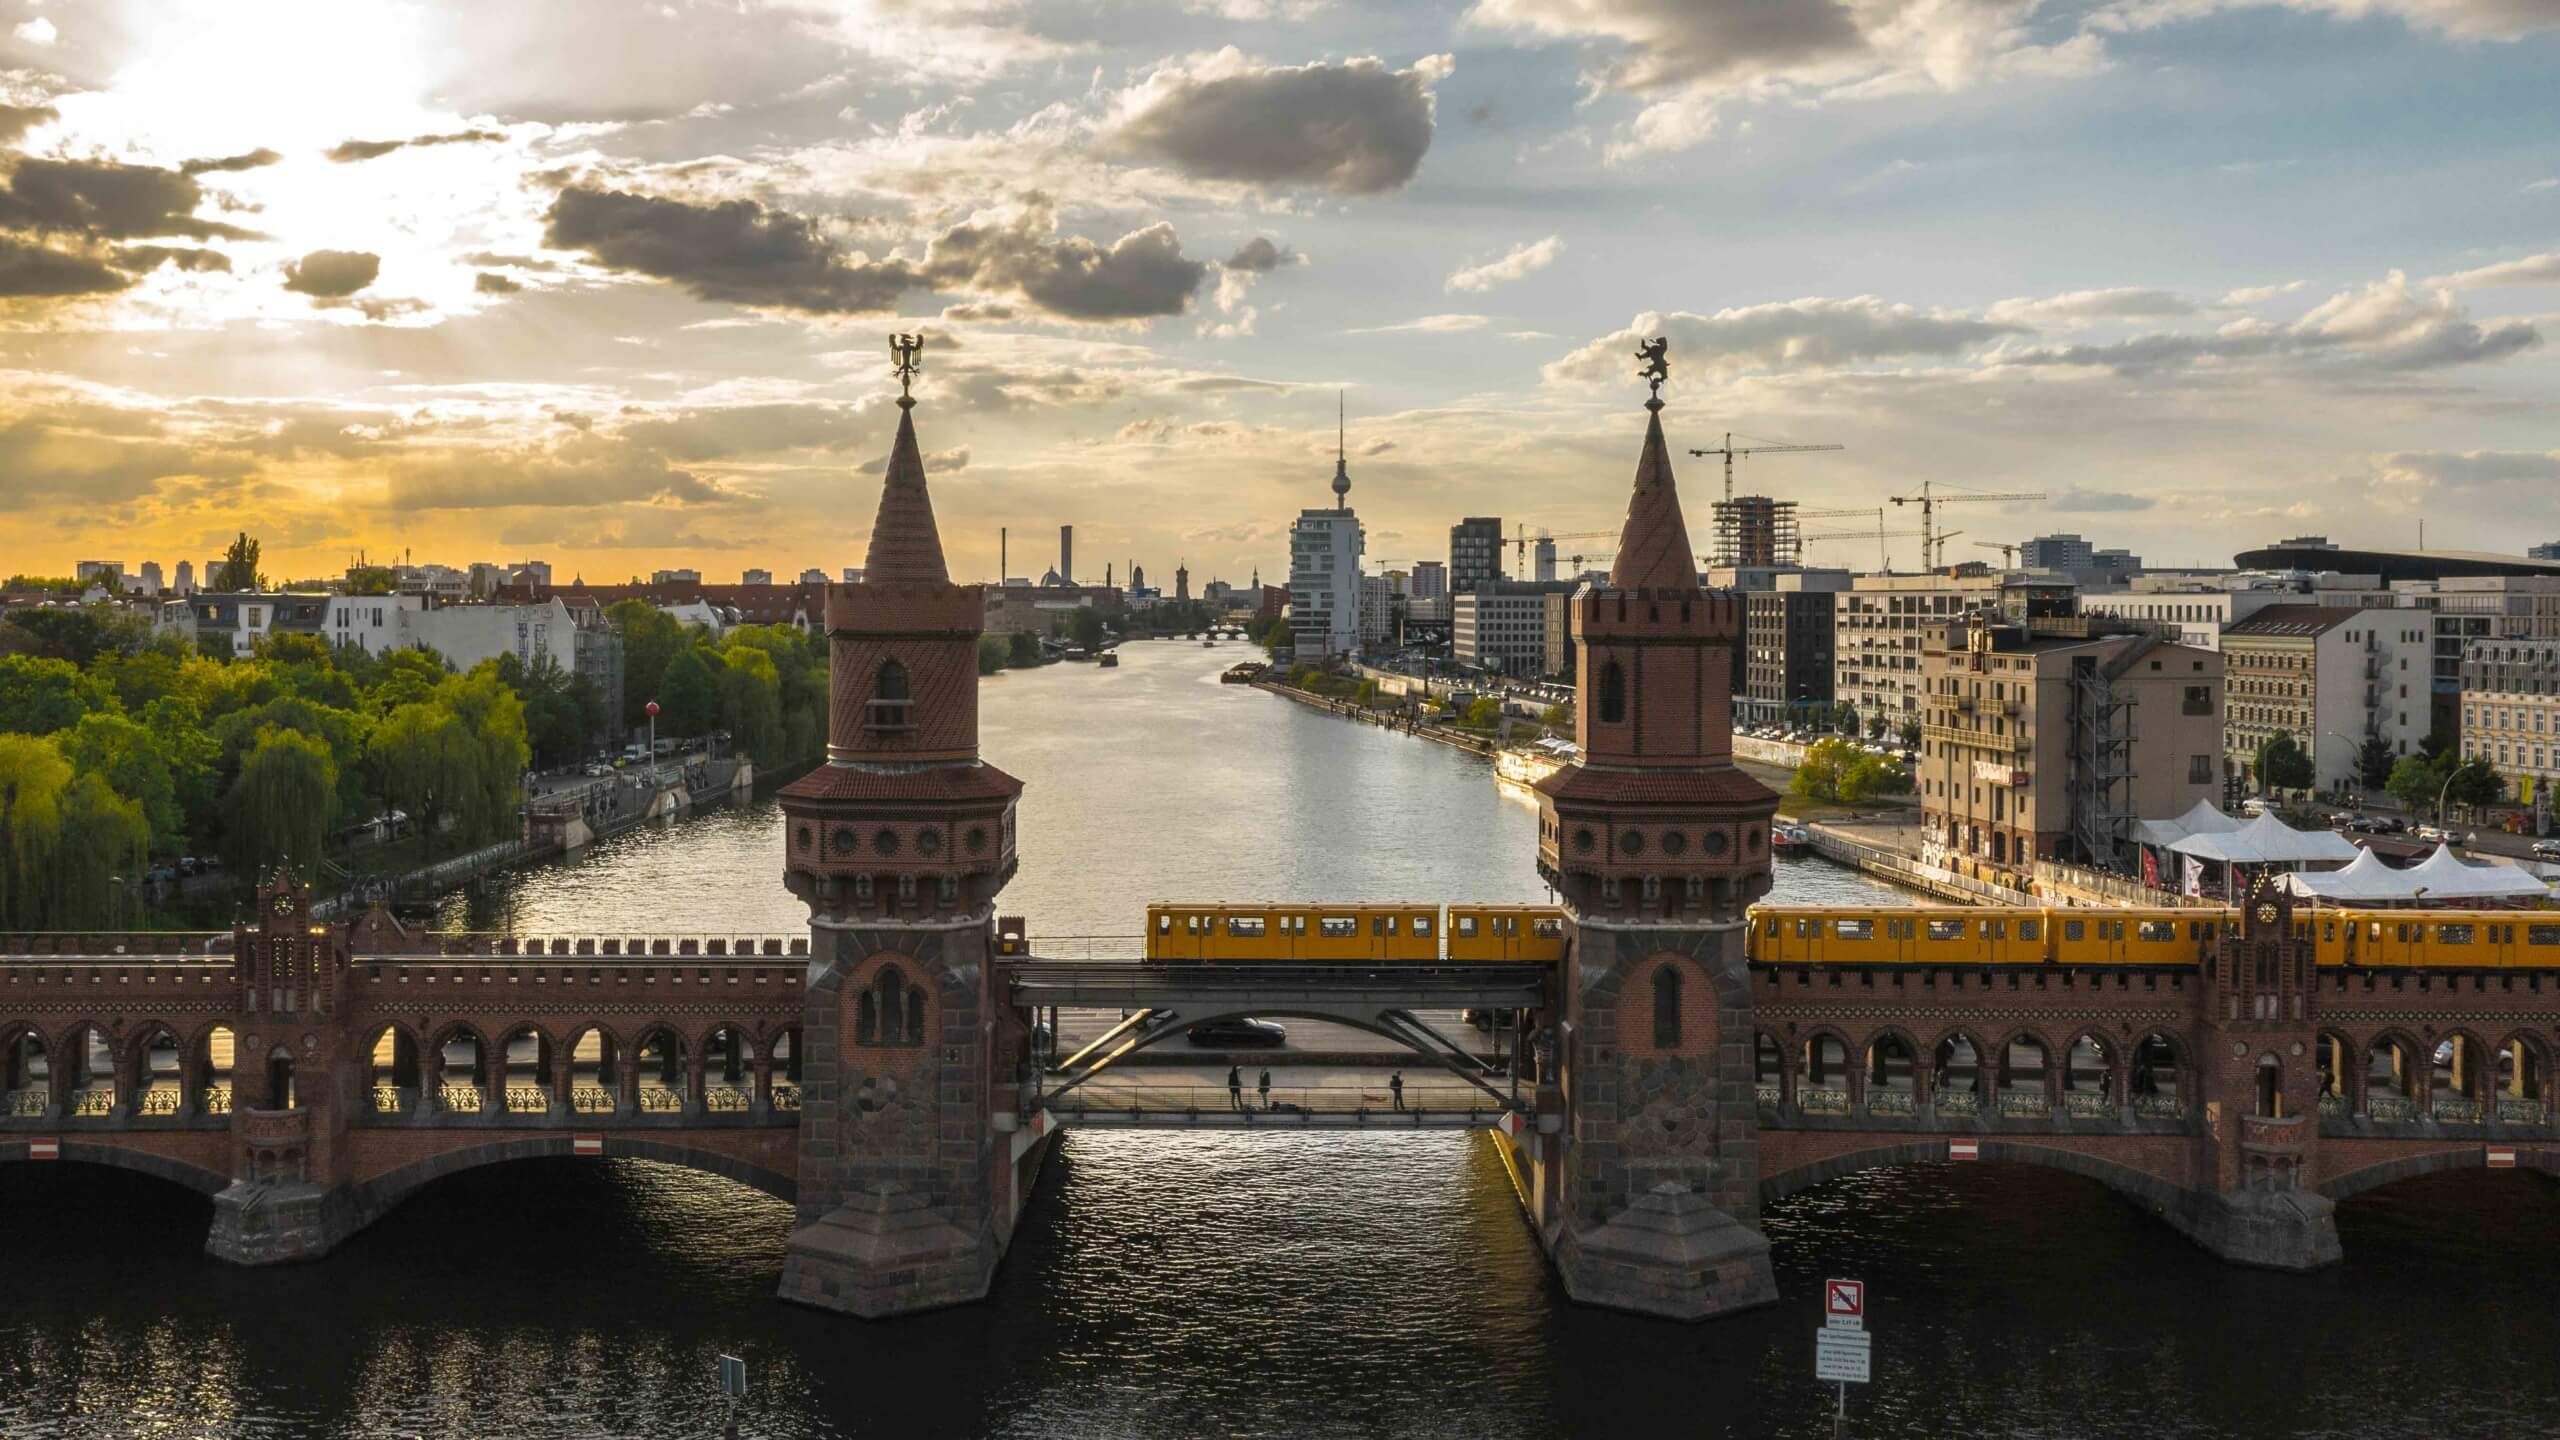 Oberbaumbrücke Berlin